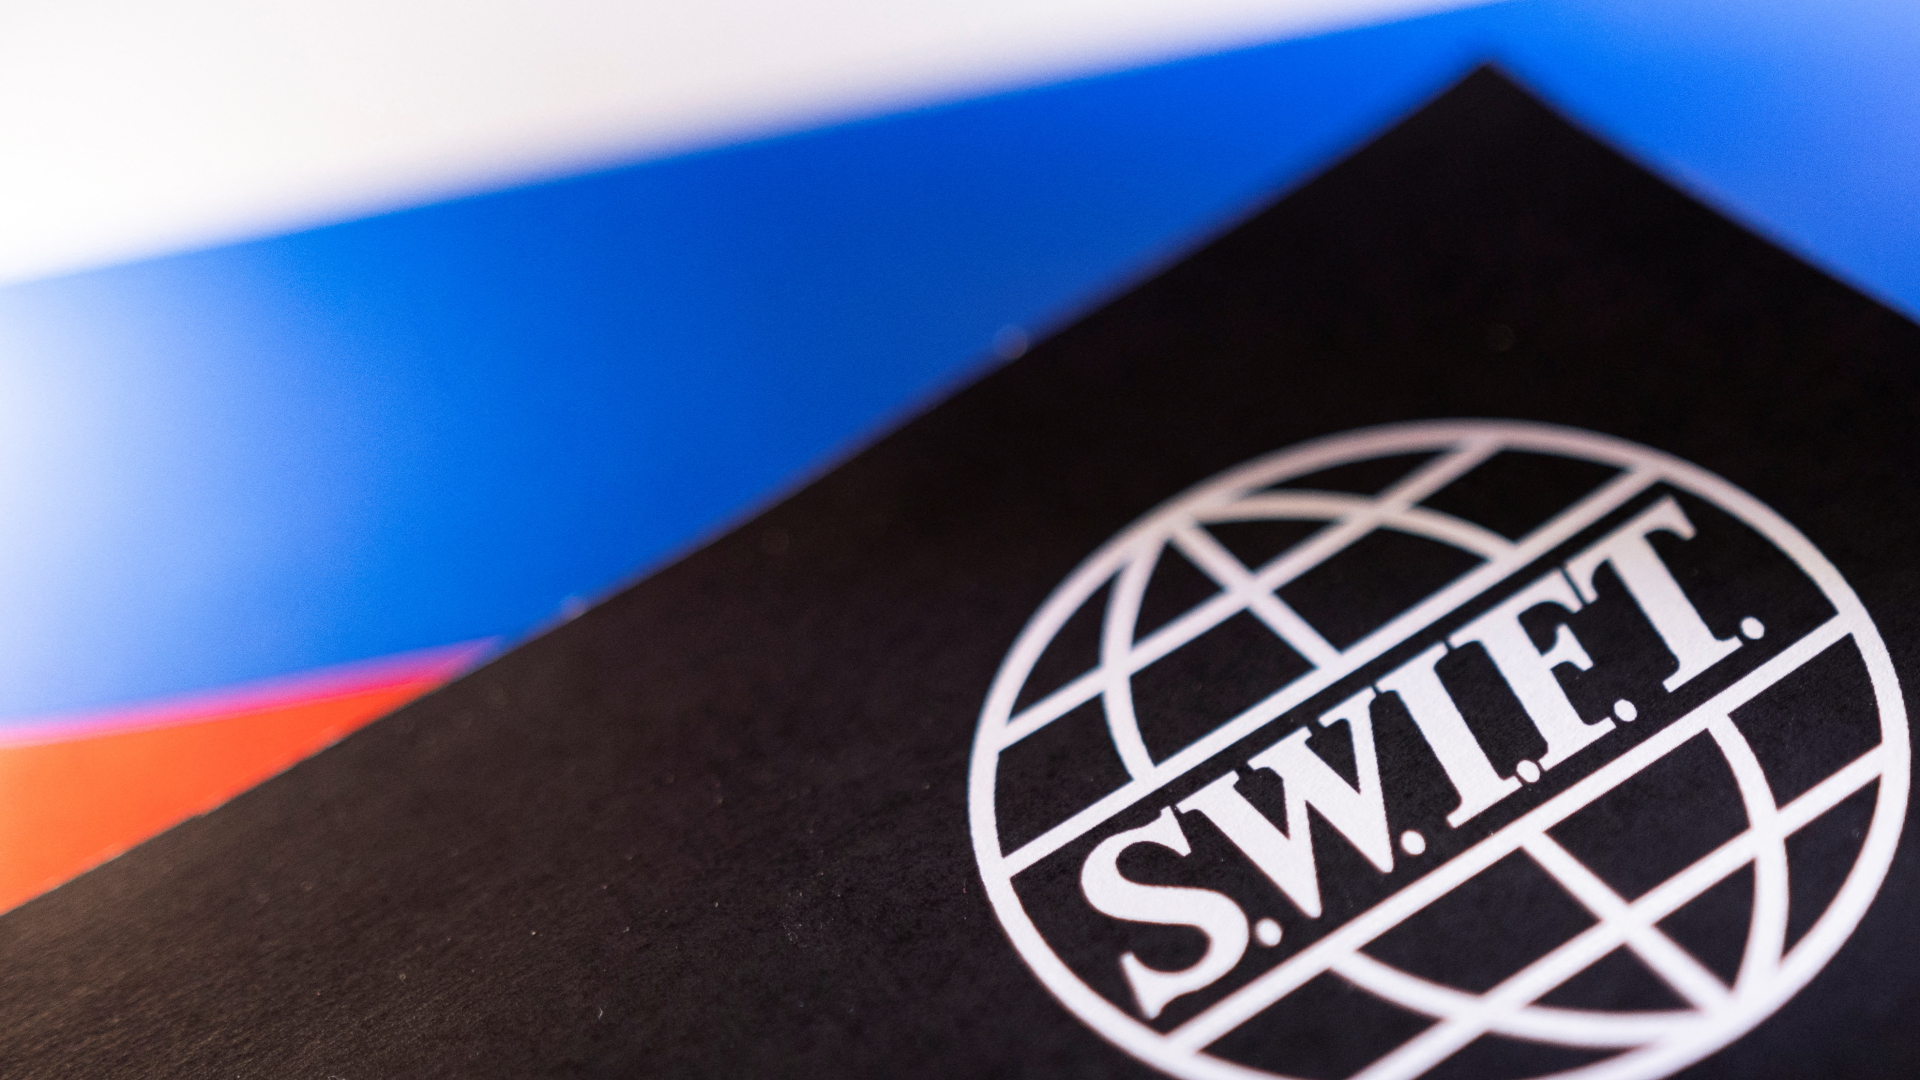 ԱՄՆ-ն և ԵՄ-ն քննարկում են SWIFT համակարգից ՌԴ մի շարք բանկերի անջատման հնարավորությունը. ԶԼՄ-ներ